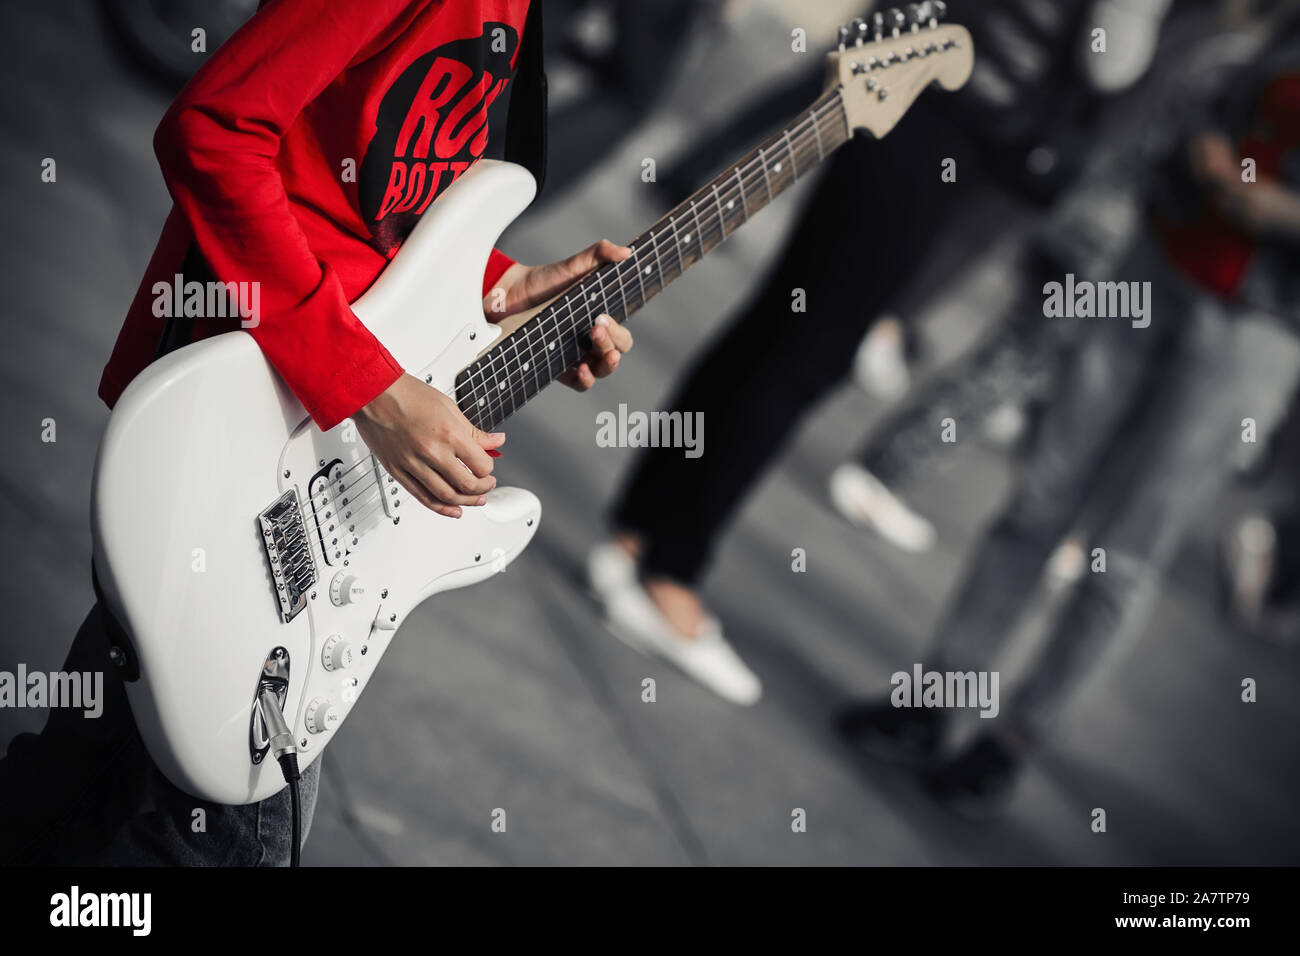 Un giovane musicista di strada in una t-shirt rossa riproduce la musica rock su un bianco di chitarra elettrica, in piedi nel mezzo di una strada affollata. Foto Stock